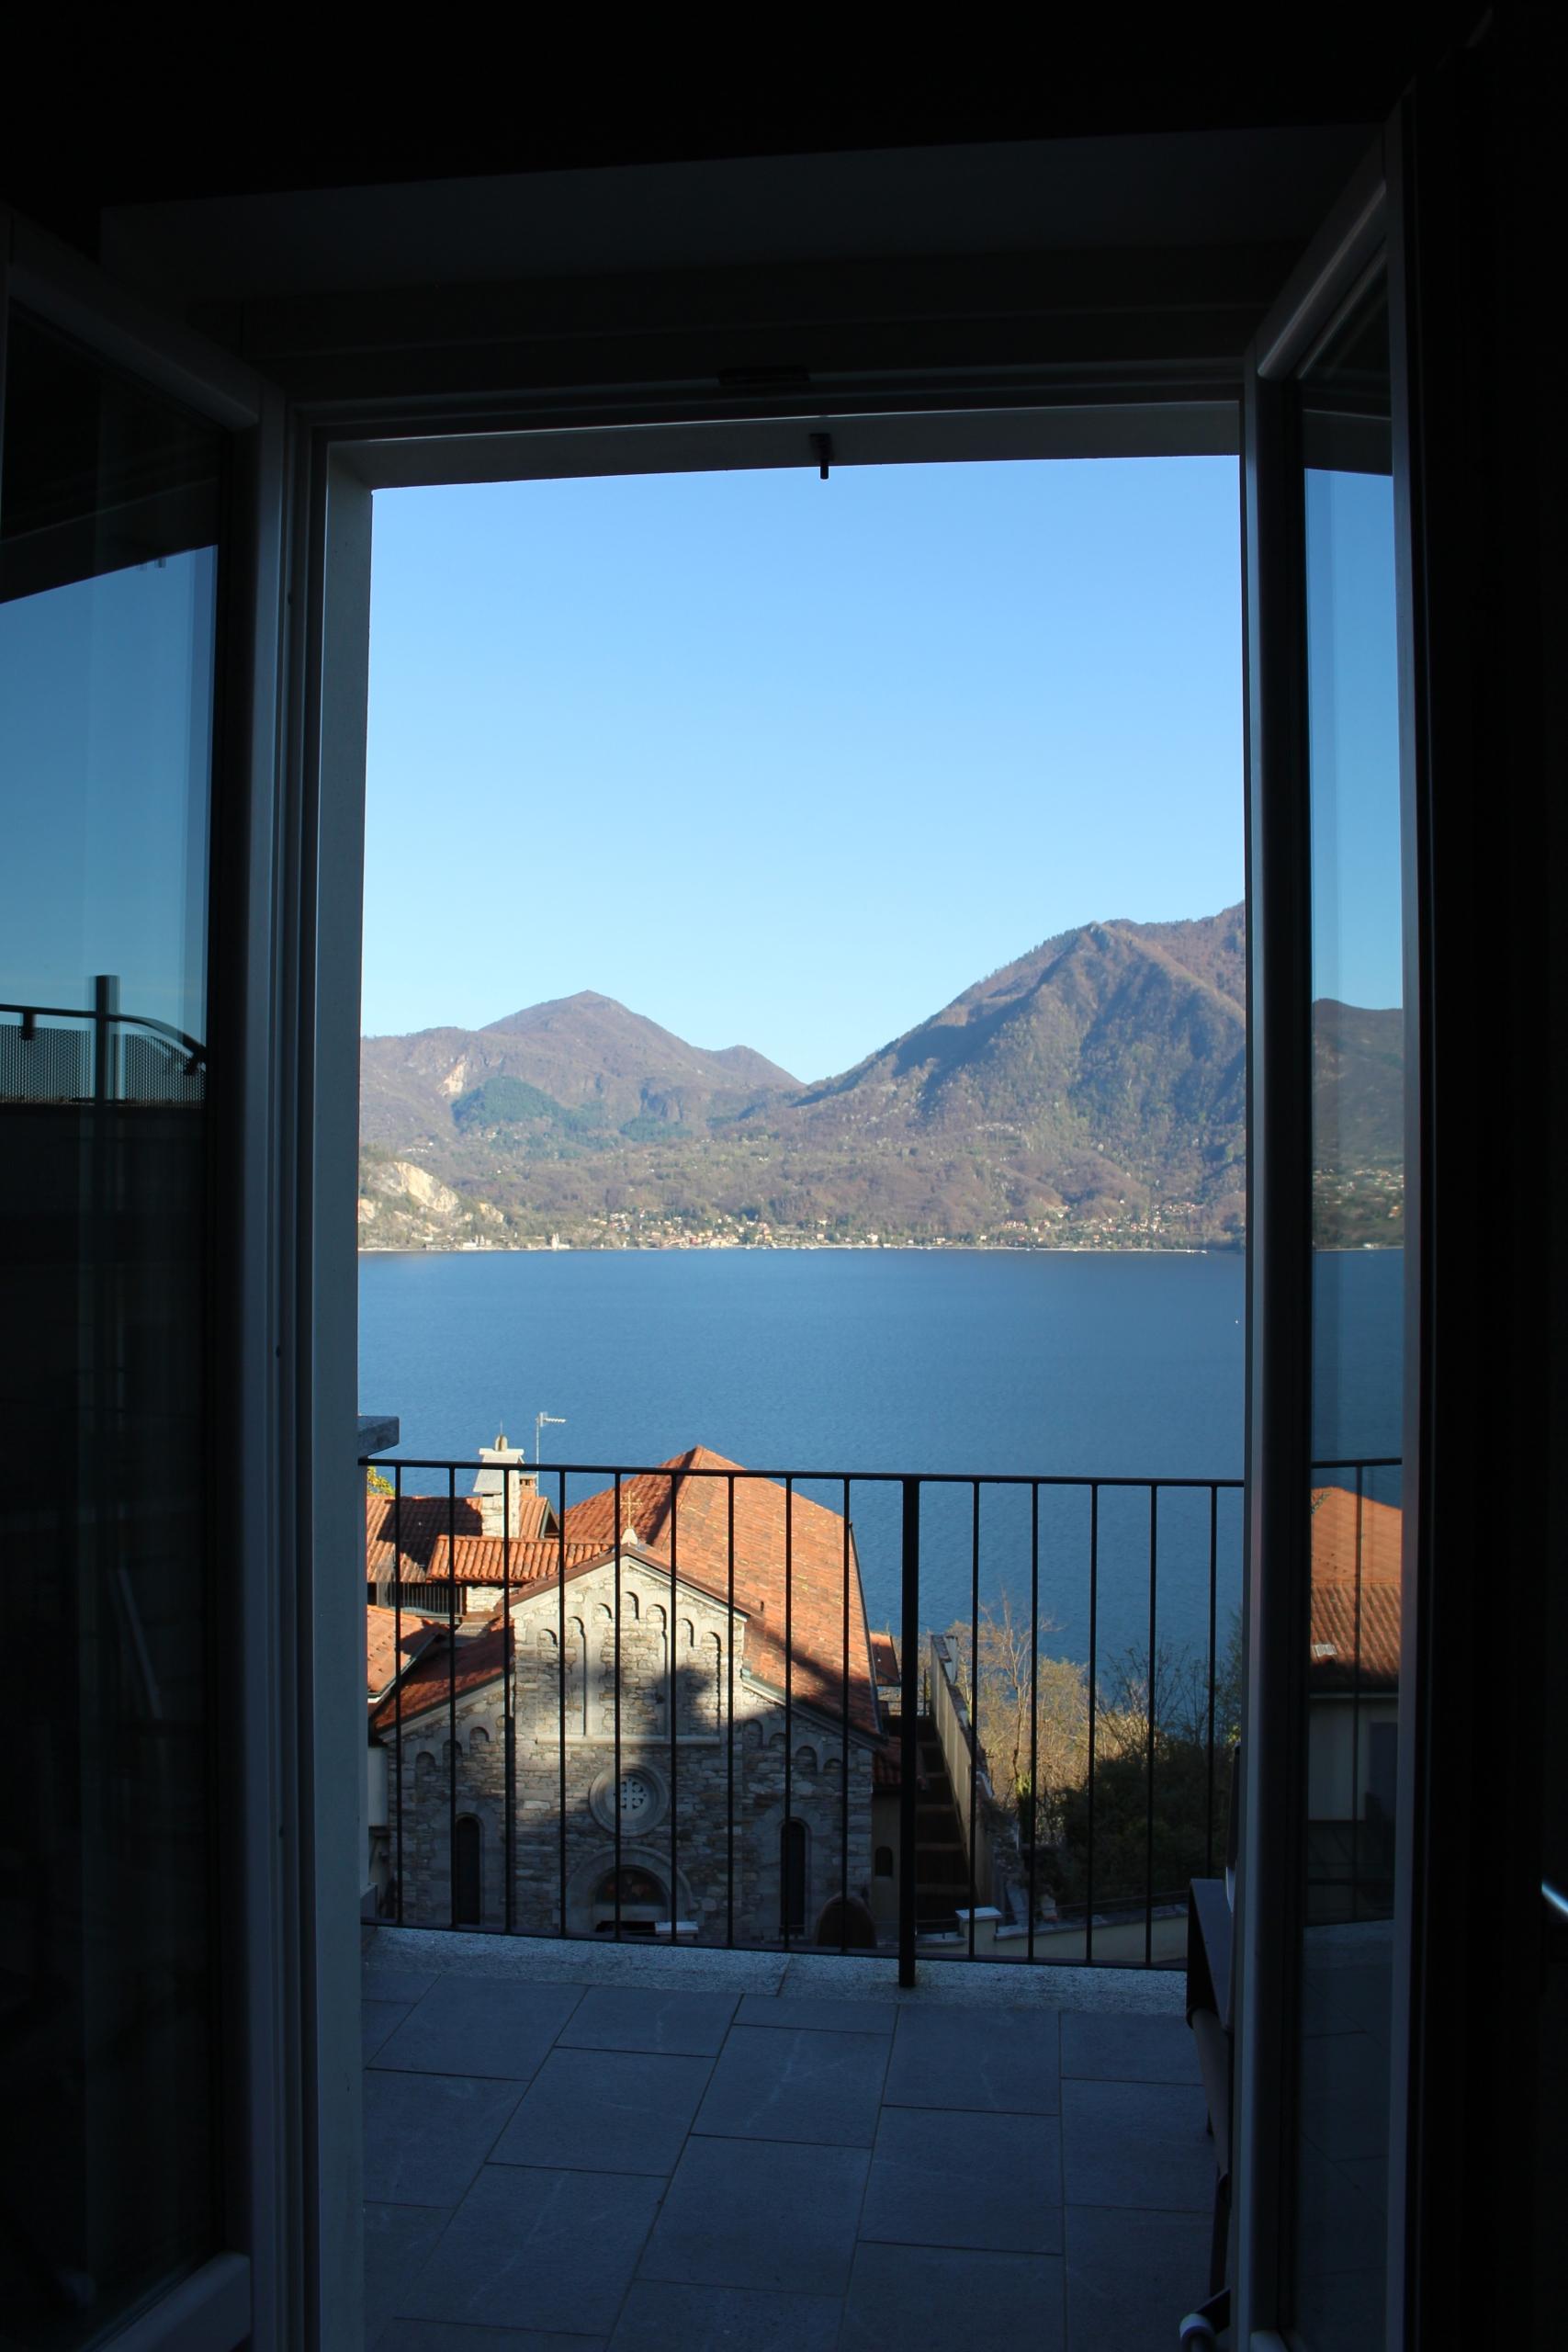 lake-view-holiday-rentals-romantic-casa-bohemia-new-luxury-apartment-ghiffa-verbania-antiche-cure-di-ghiffa-lake-maggiore-verbania